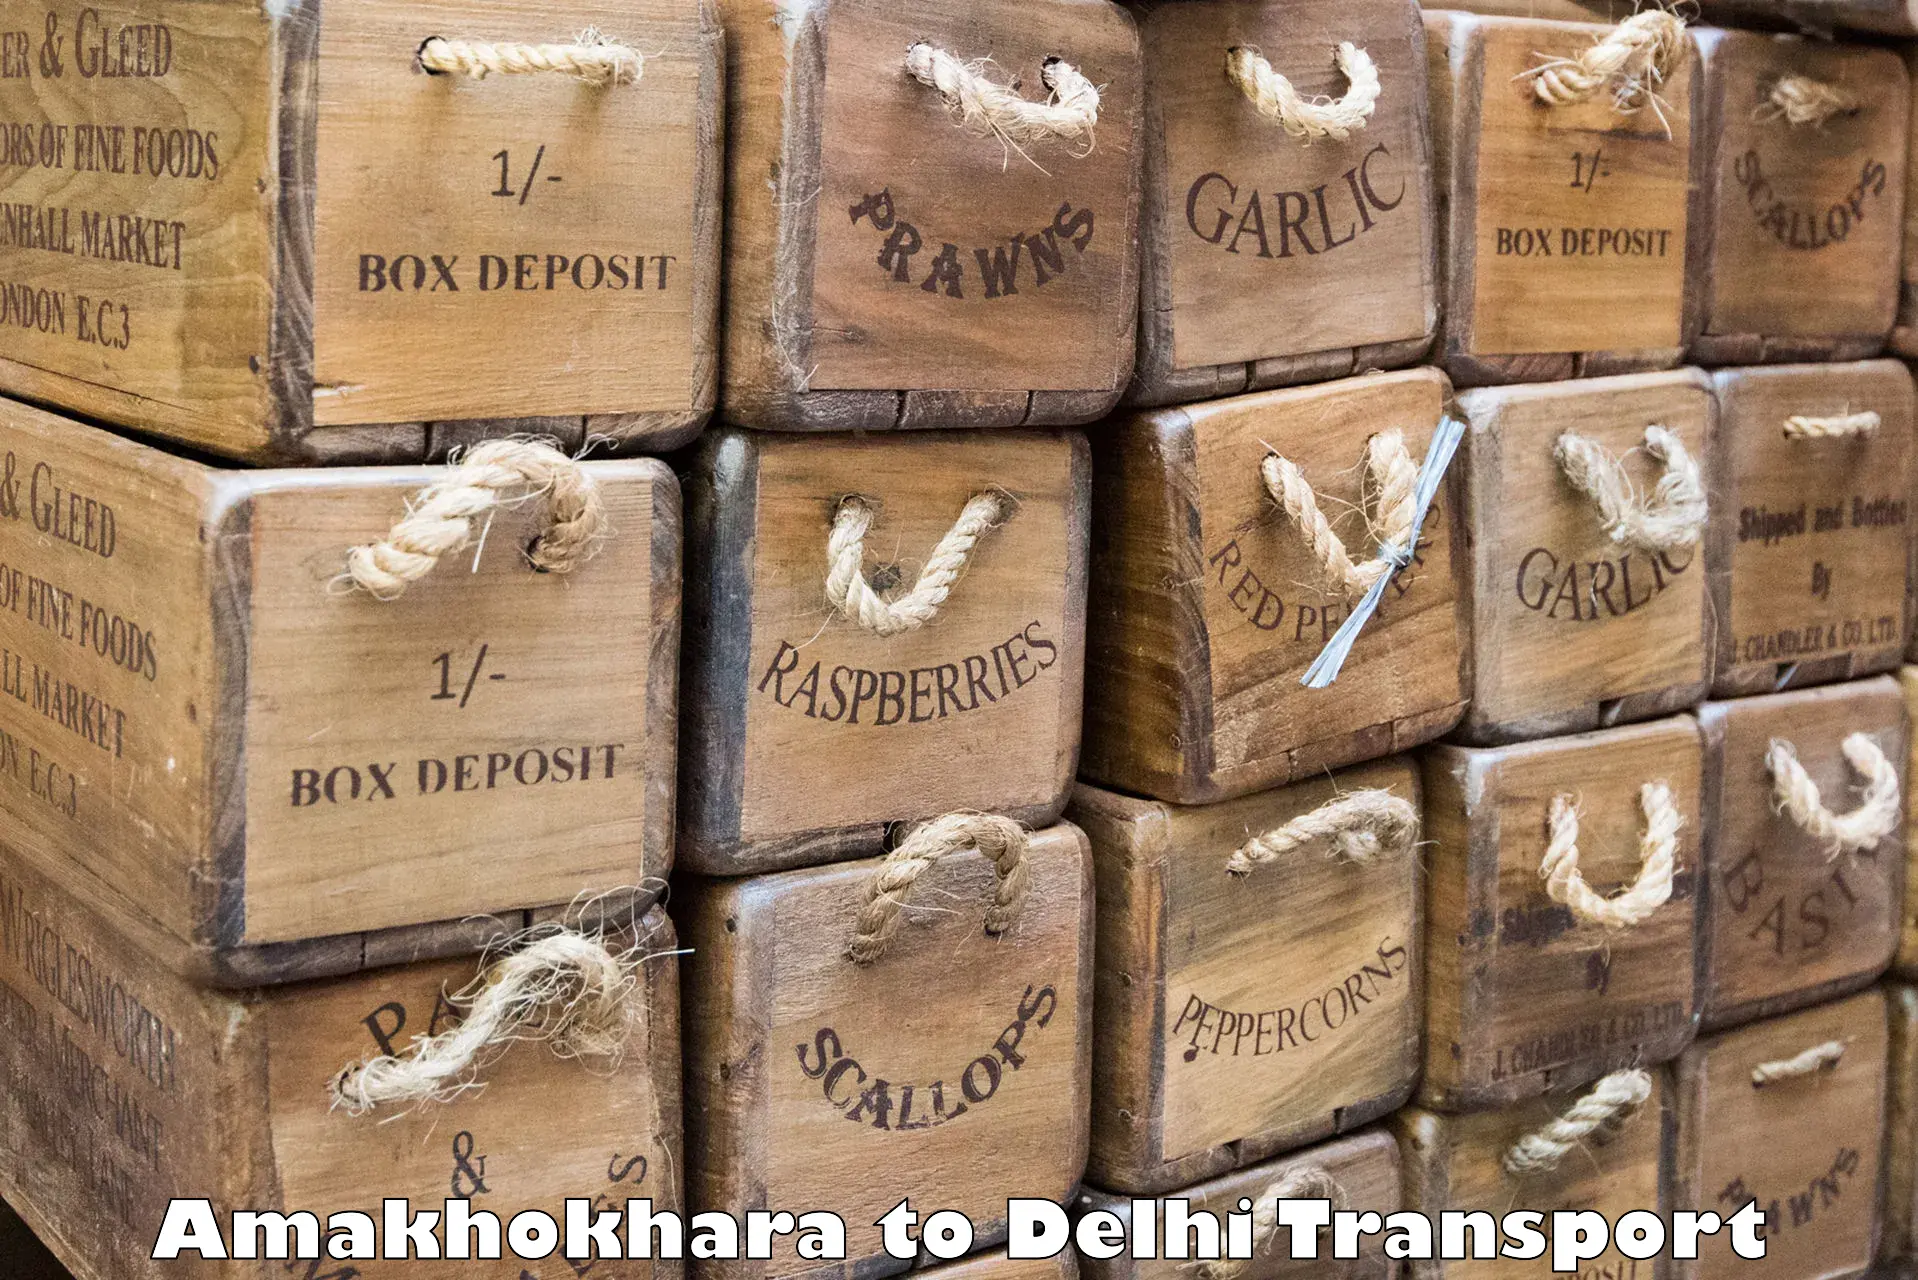 Cargo transportation services Amakhokhara to Kalkaji